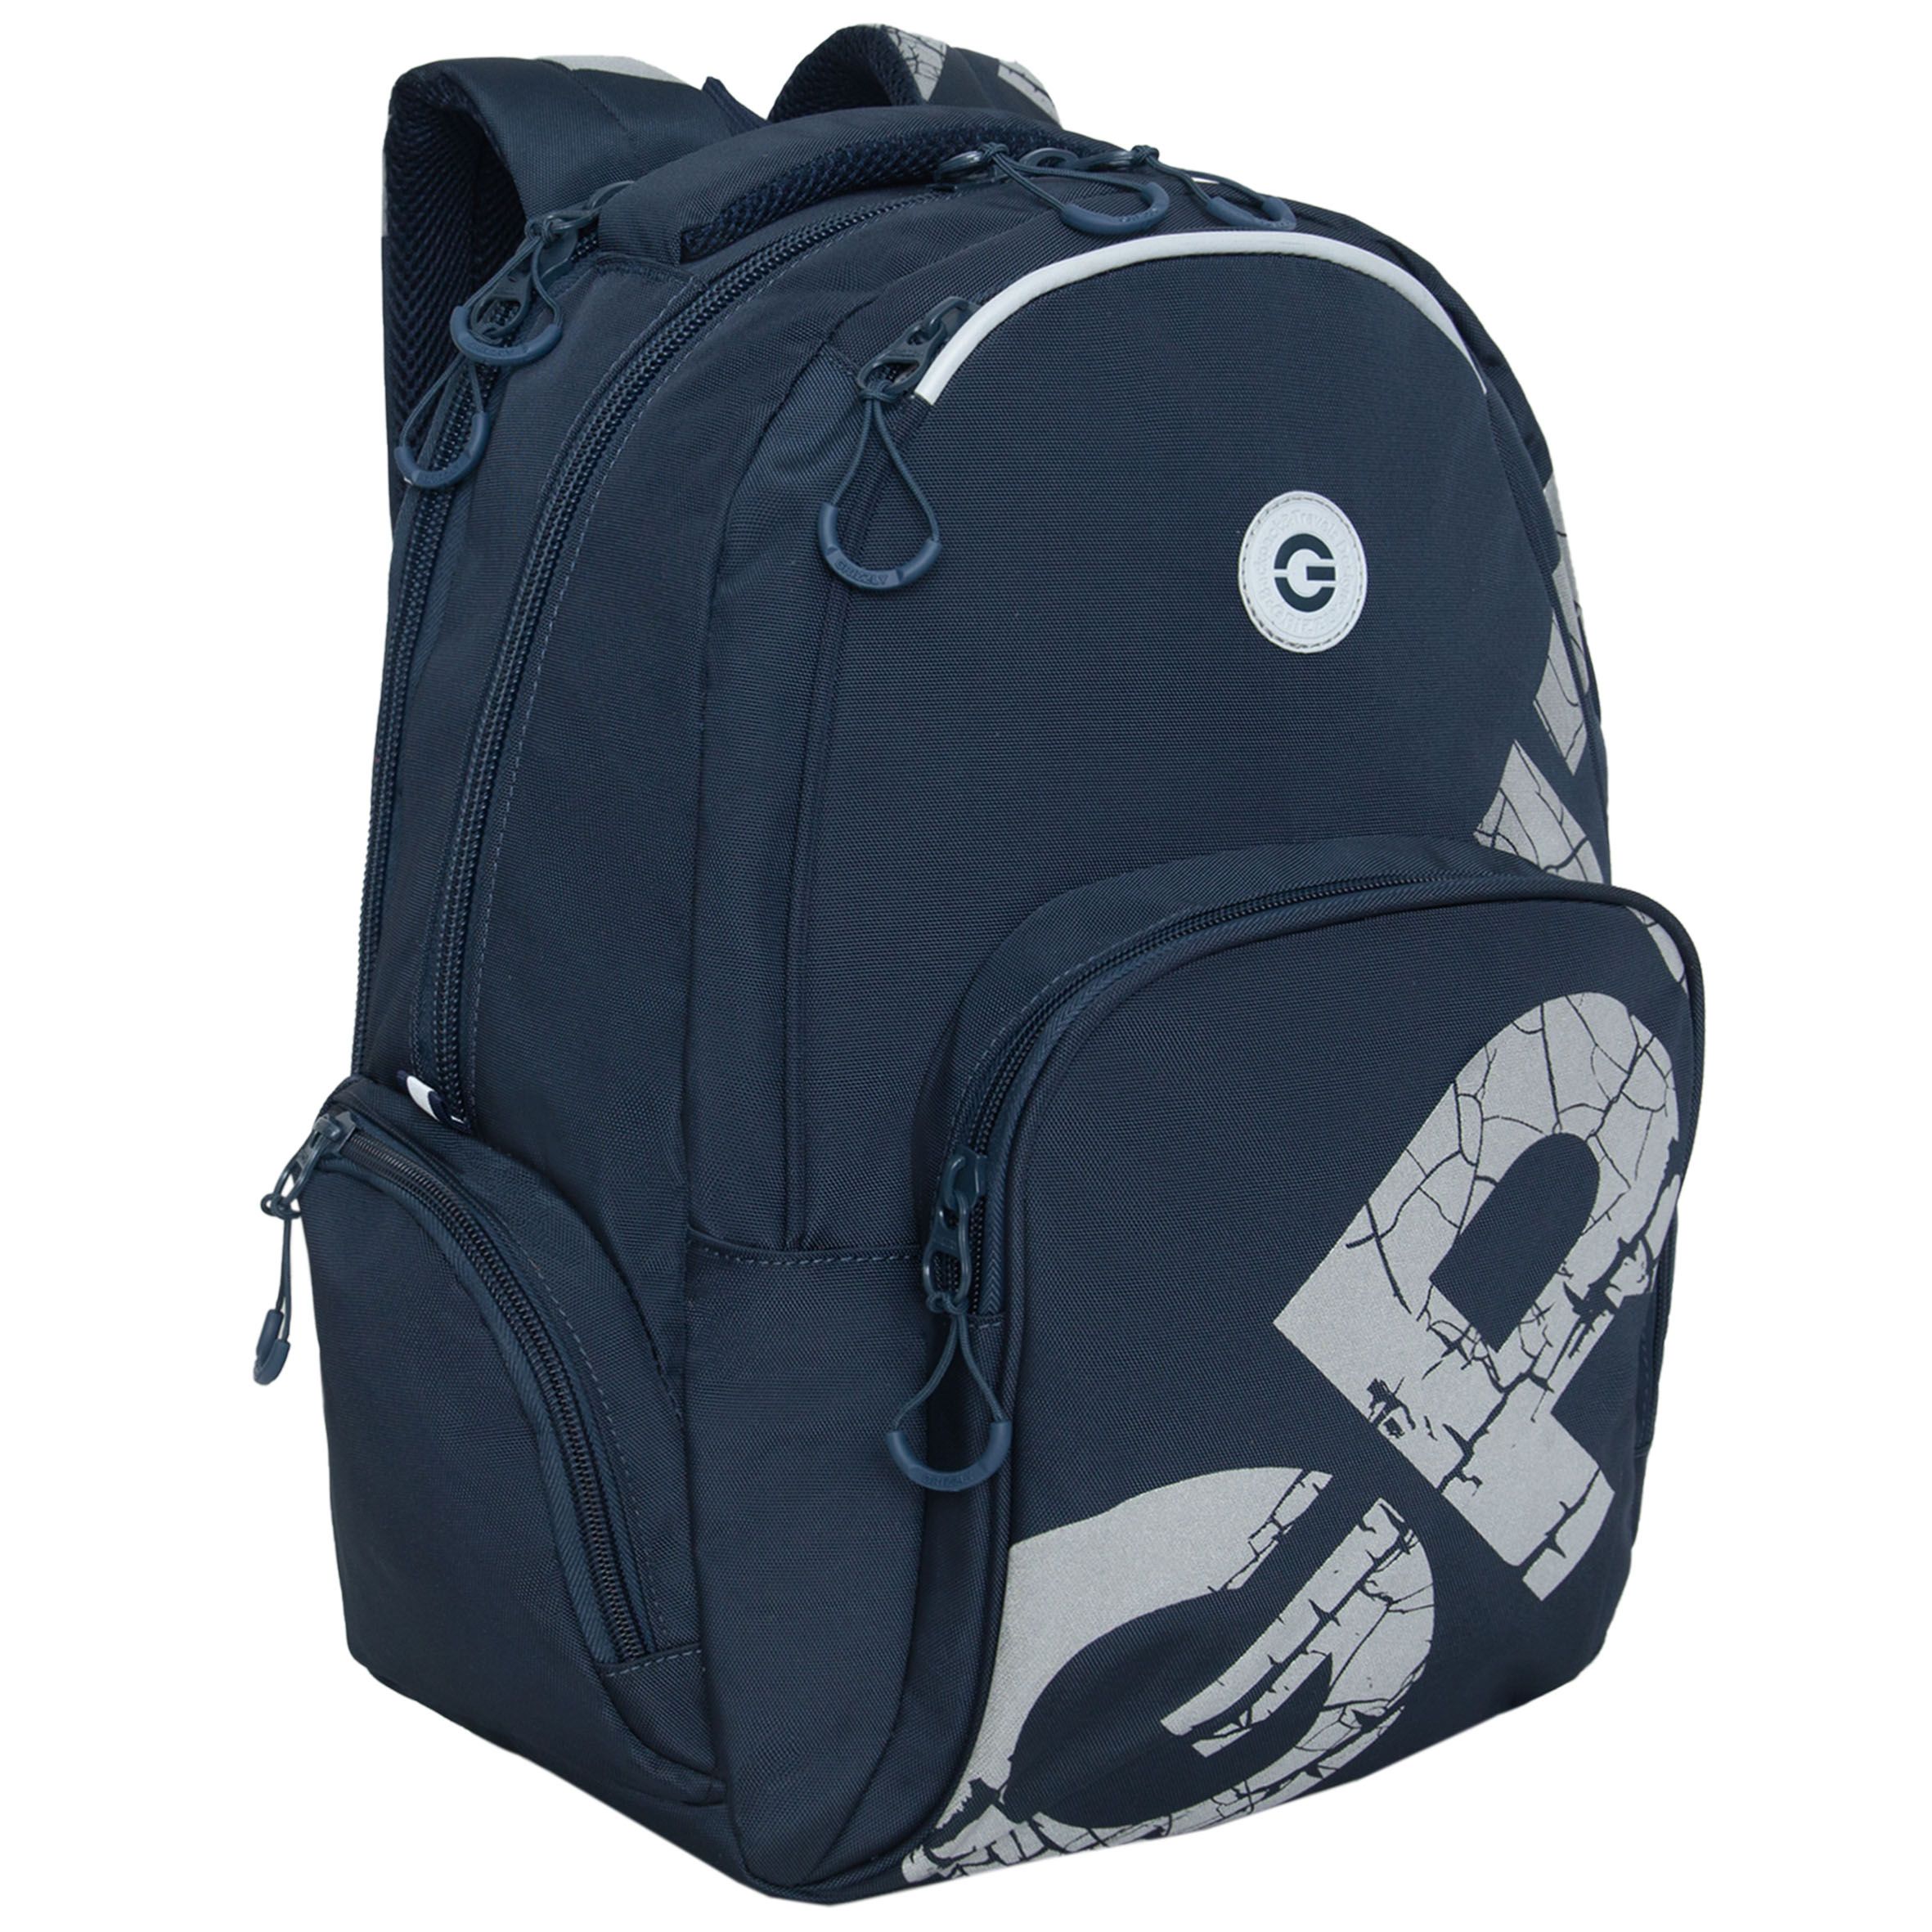 Рюкзак GRIZZLY RU-433-1 молодежный модный для подростков темно-синий рюкзак молодежный 45 х 32 х 23 см эргономичная спинка отделение для ноутбука grizzly 330 чёрный ru 330 2 1